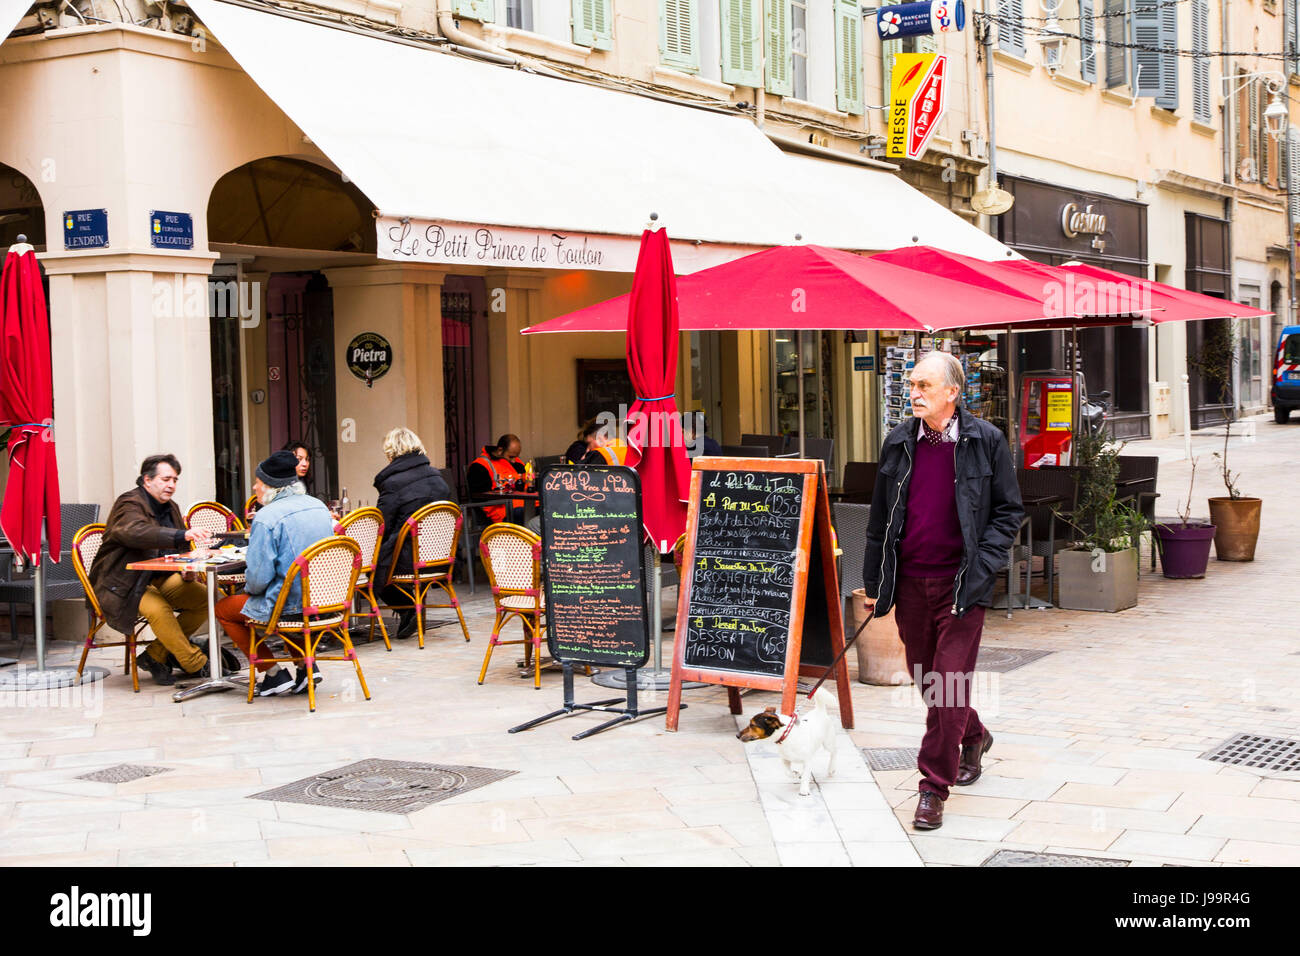 Il y a une scène à café Place Puget à Toulon, France. Banque D'Images